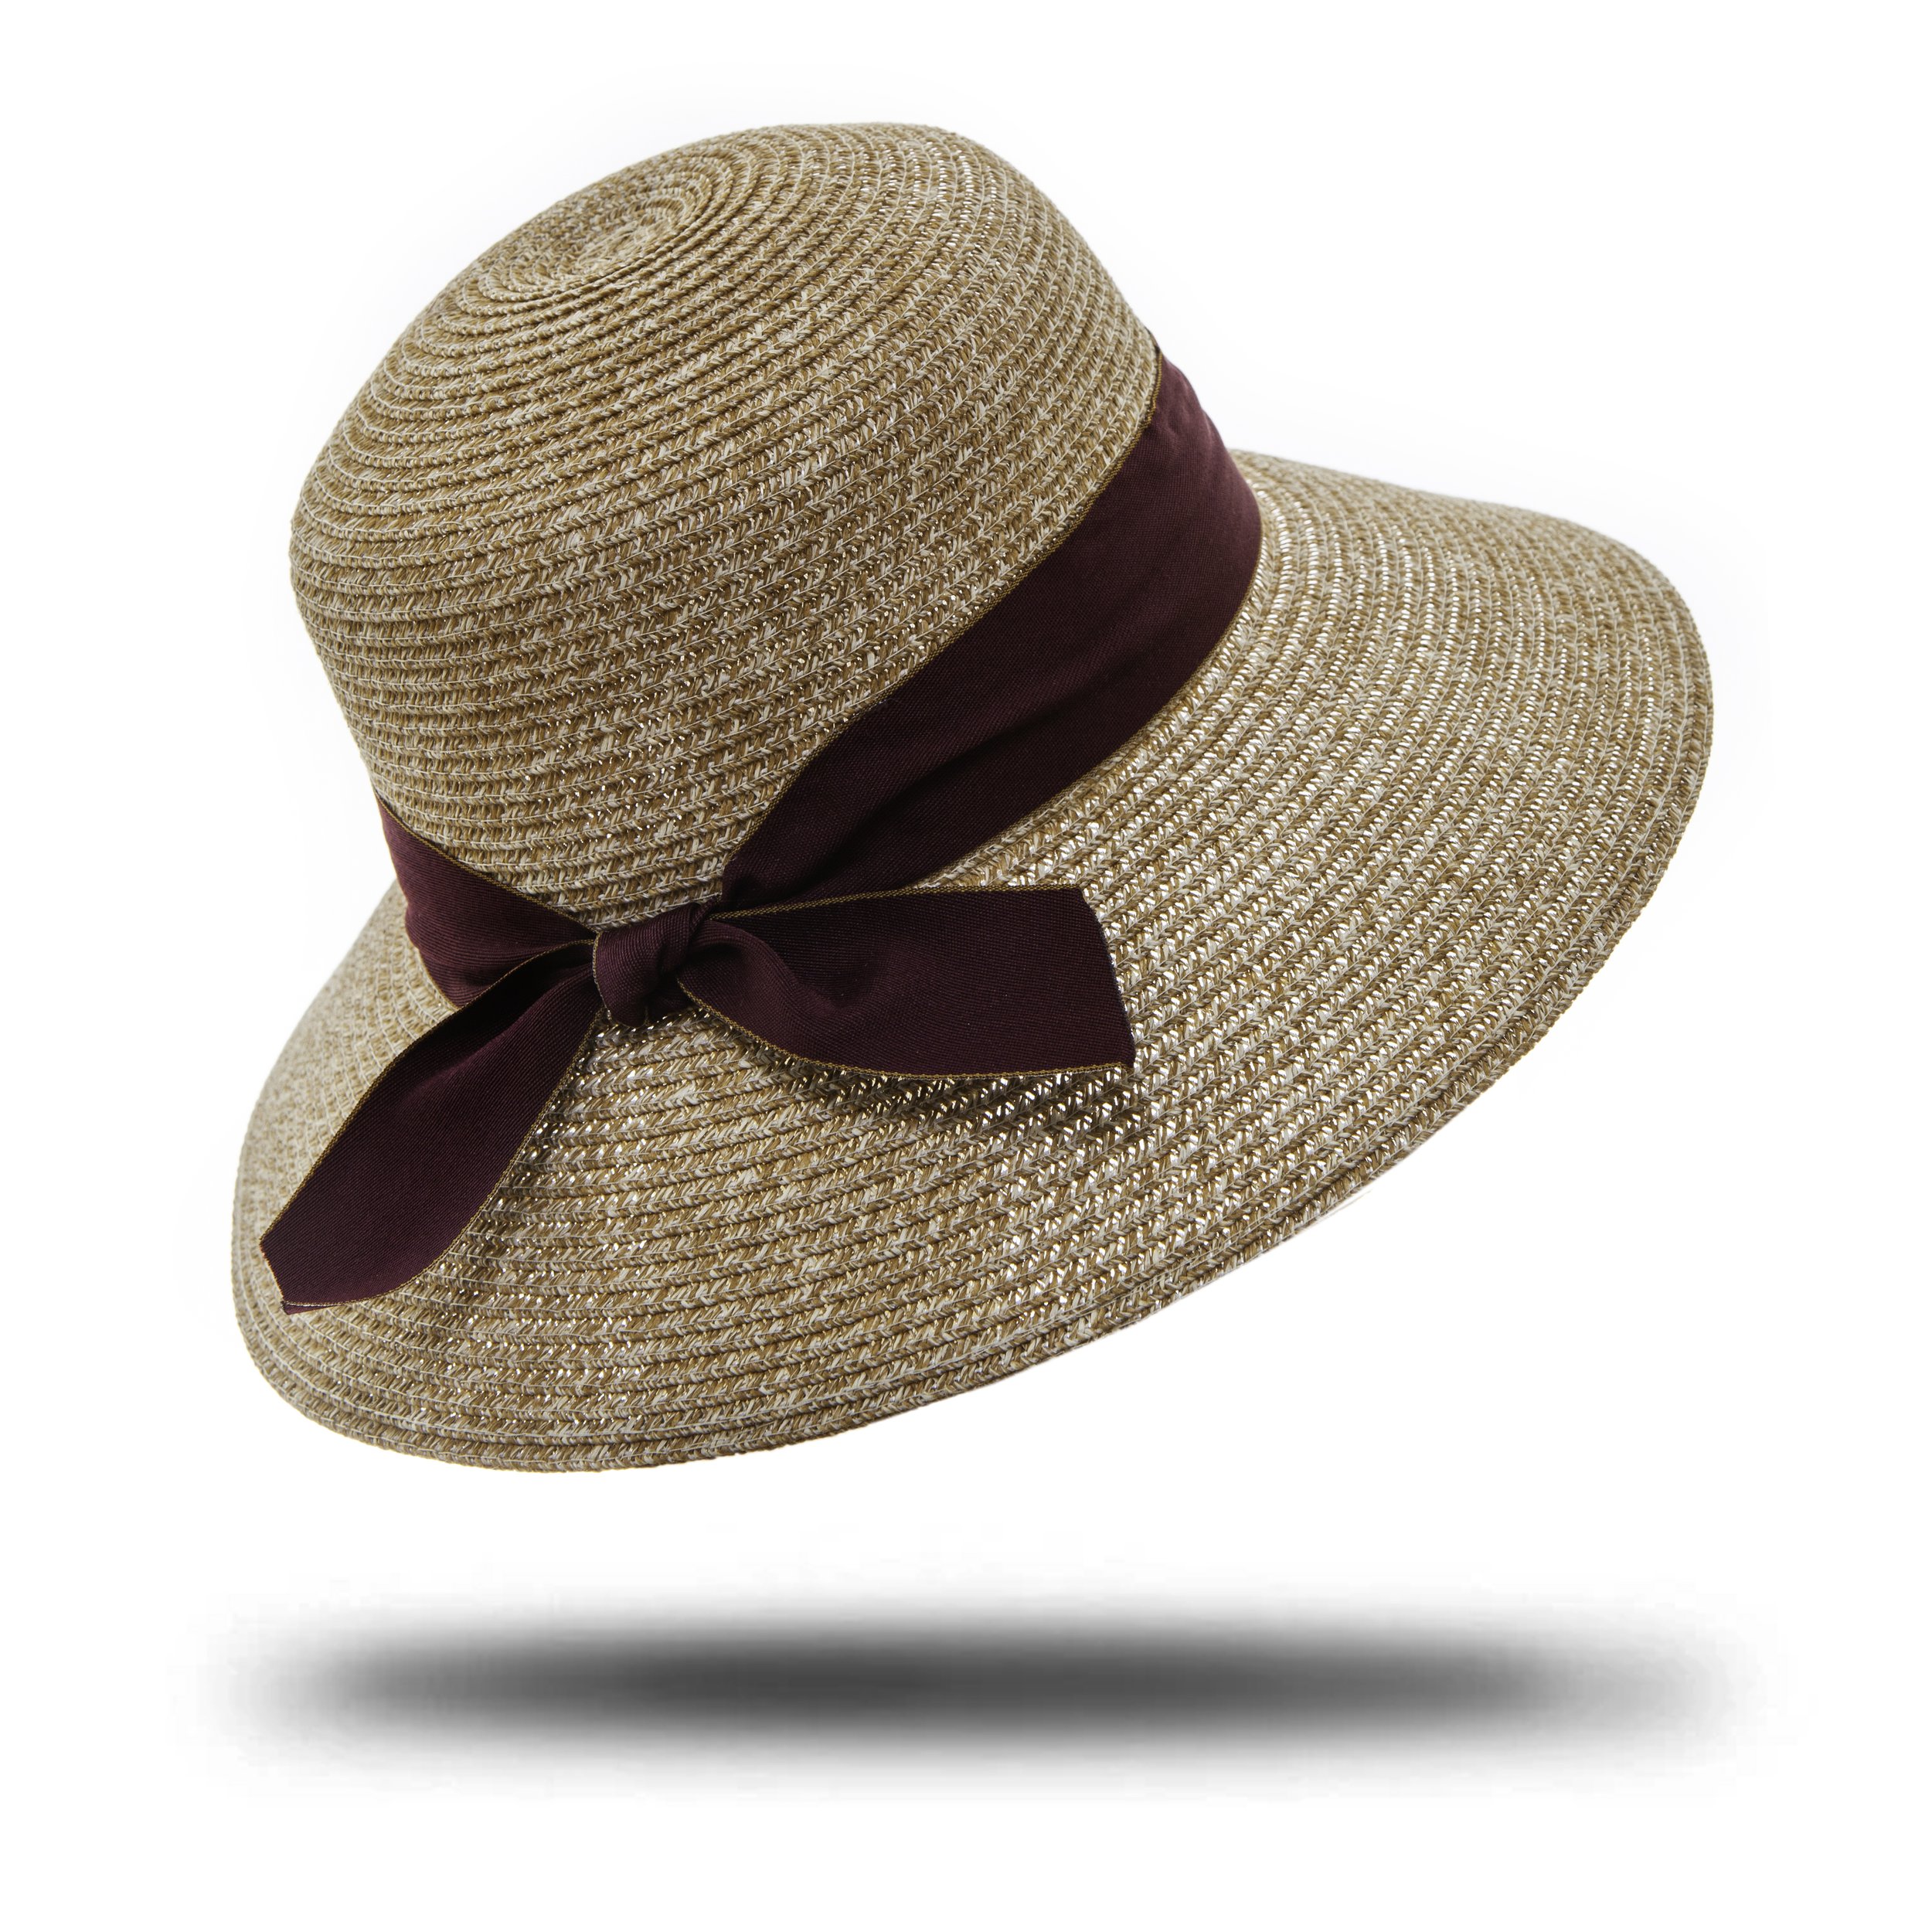 Shop — Garden Hats UK